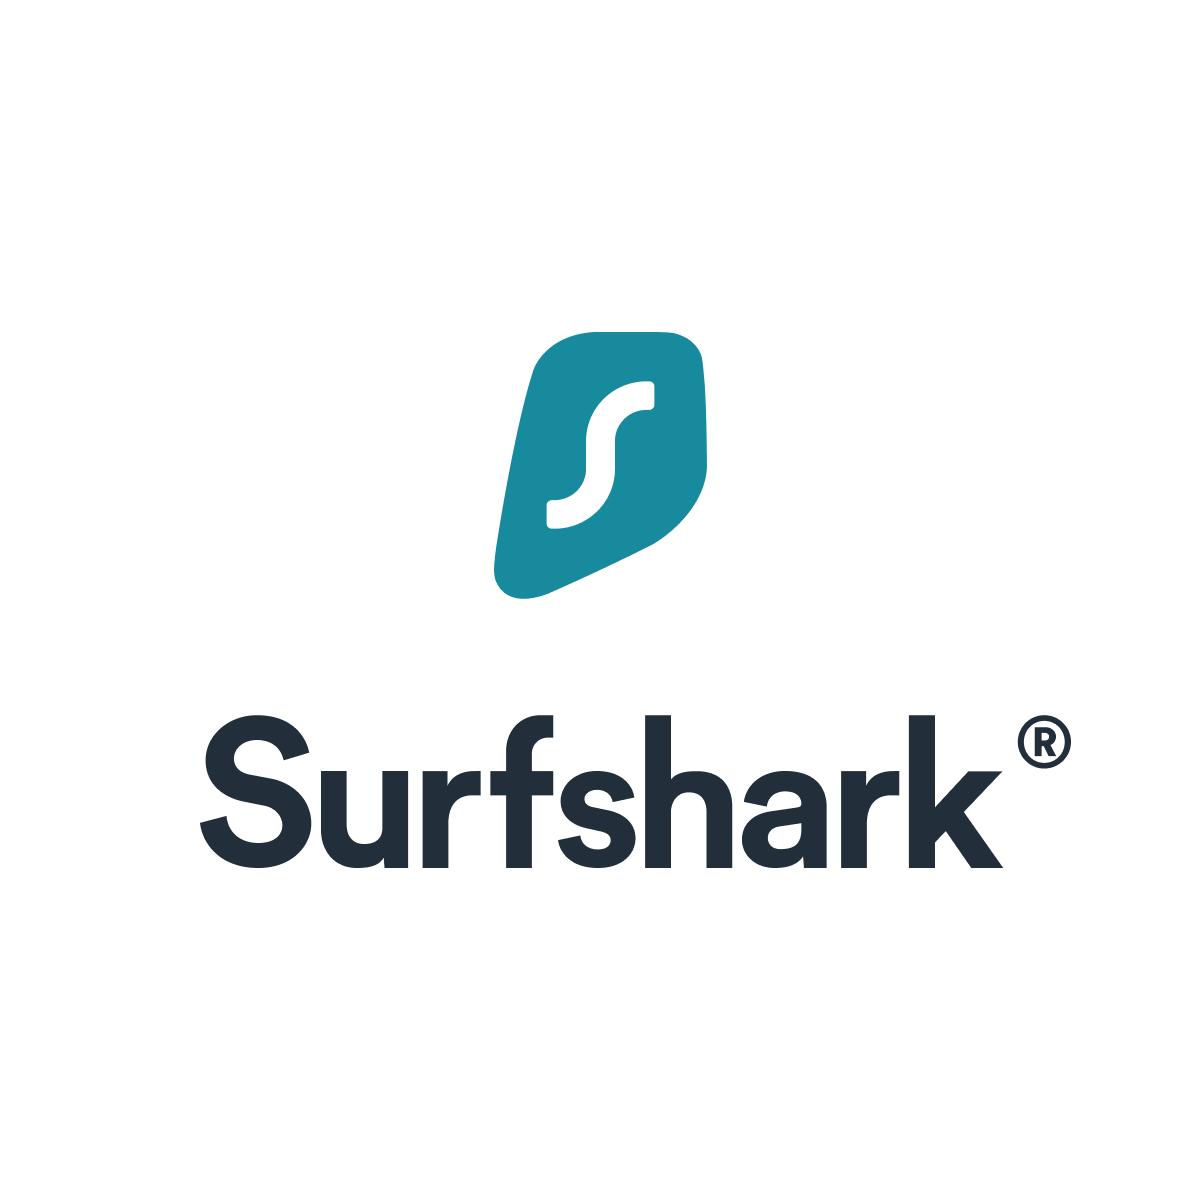 Surfshark - VPN Specs & Features Review